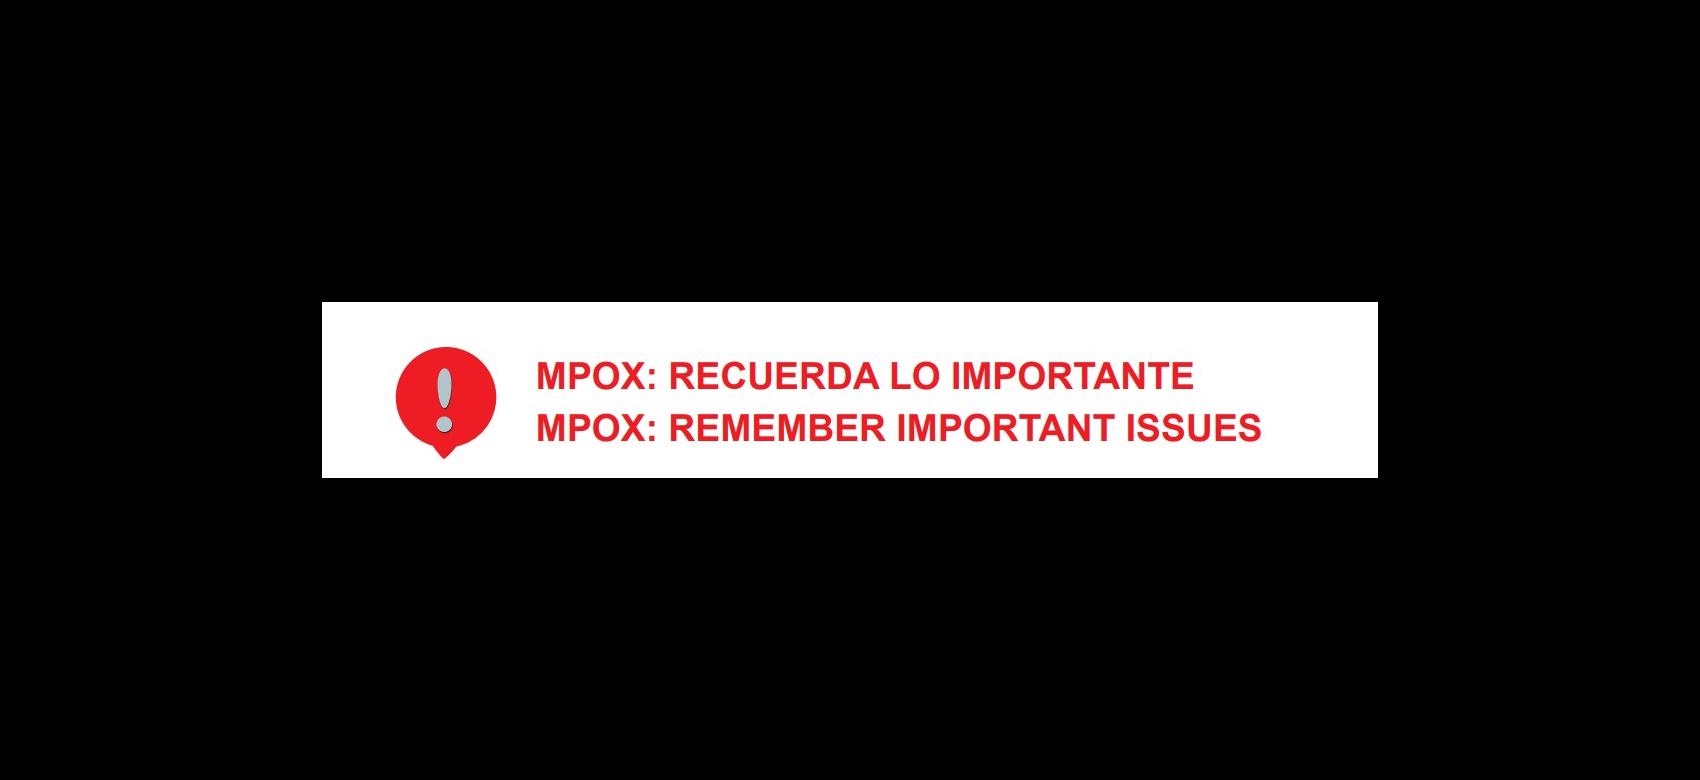 Mpox: recuerda lo importante